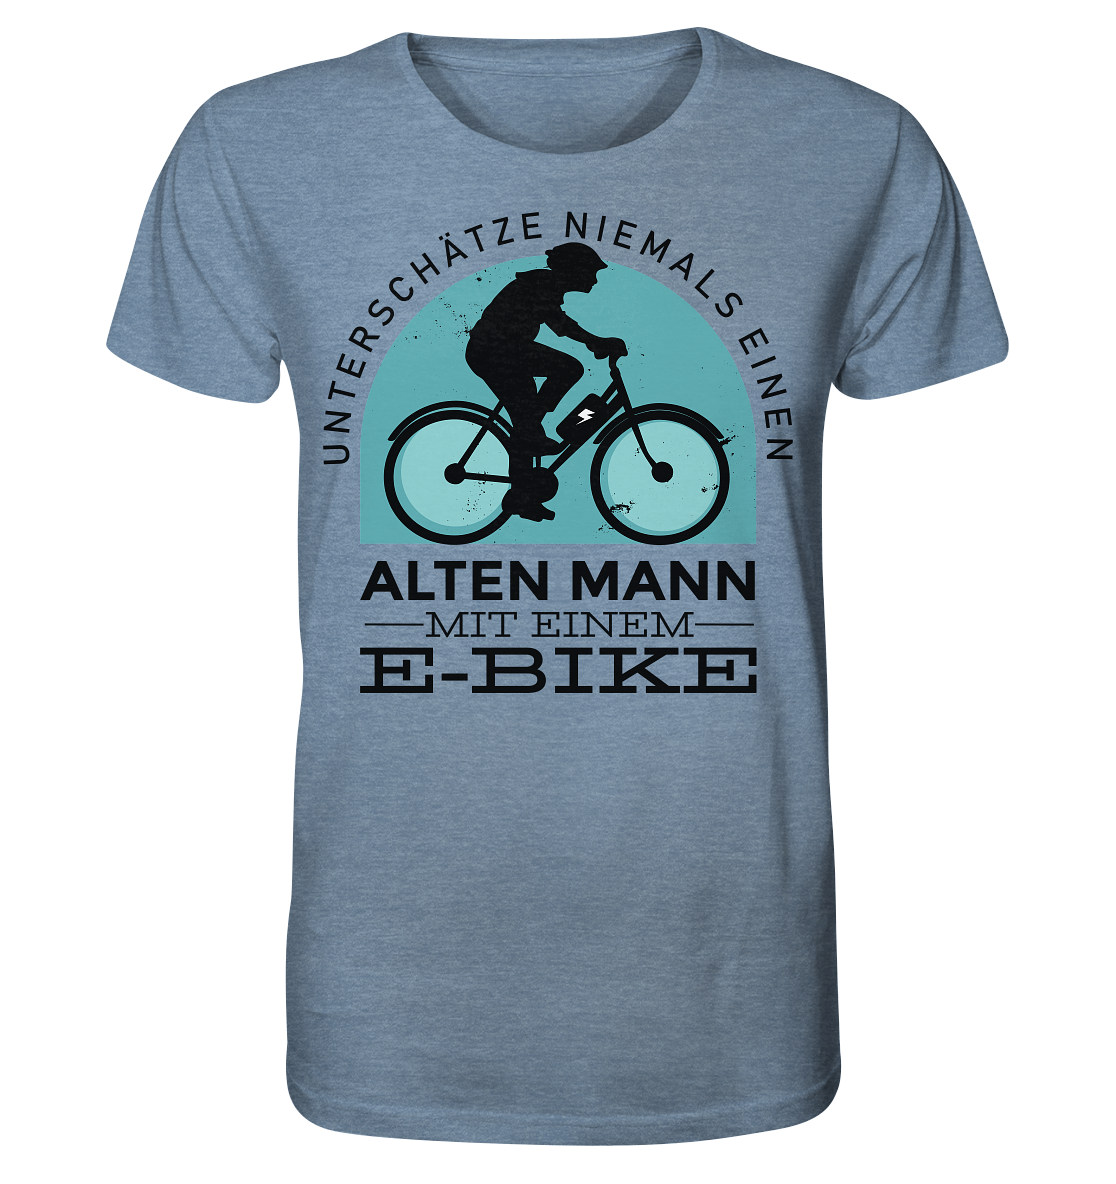 Alten Mann mit einem E-Bike - Organic Shirt (meliert)